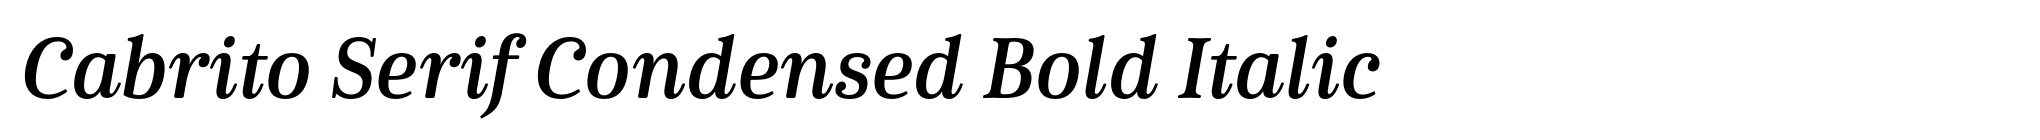 Cabrito Serif Condensed Bold Italic image